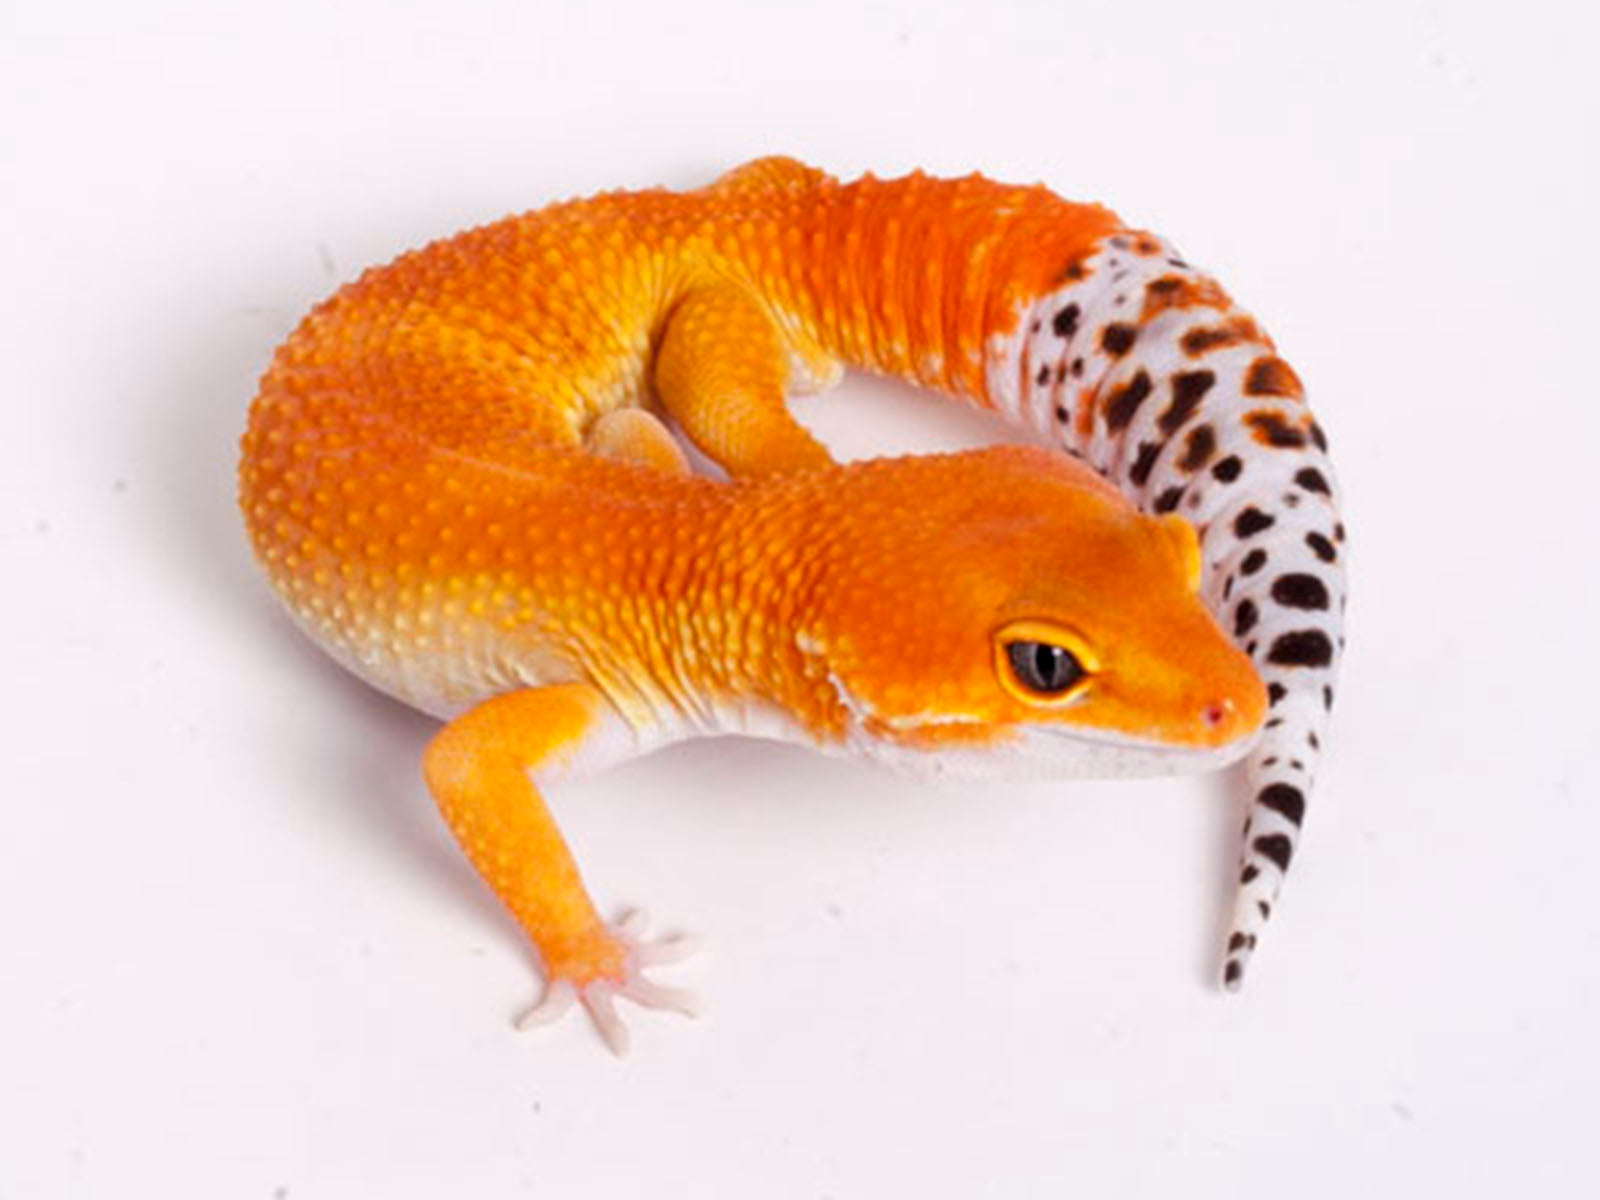 purple tangerine leopard gecko